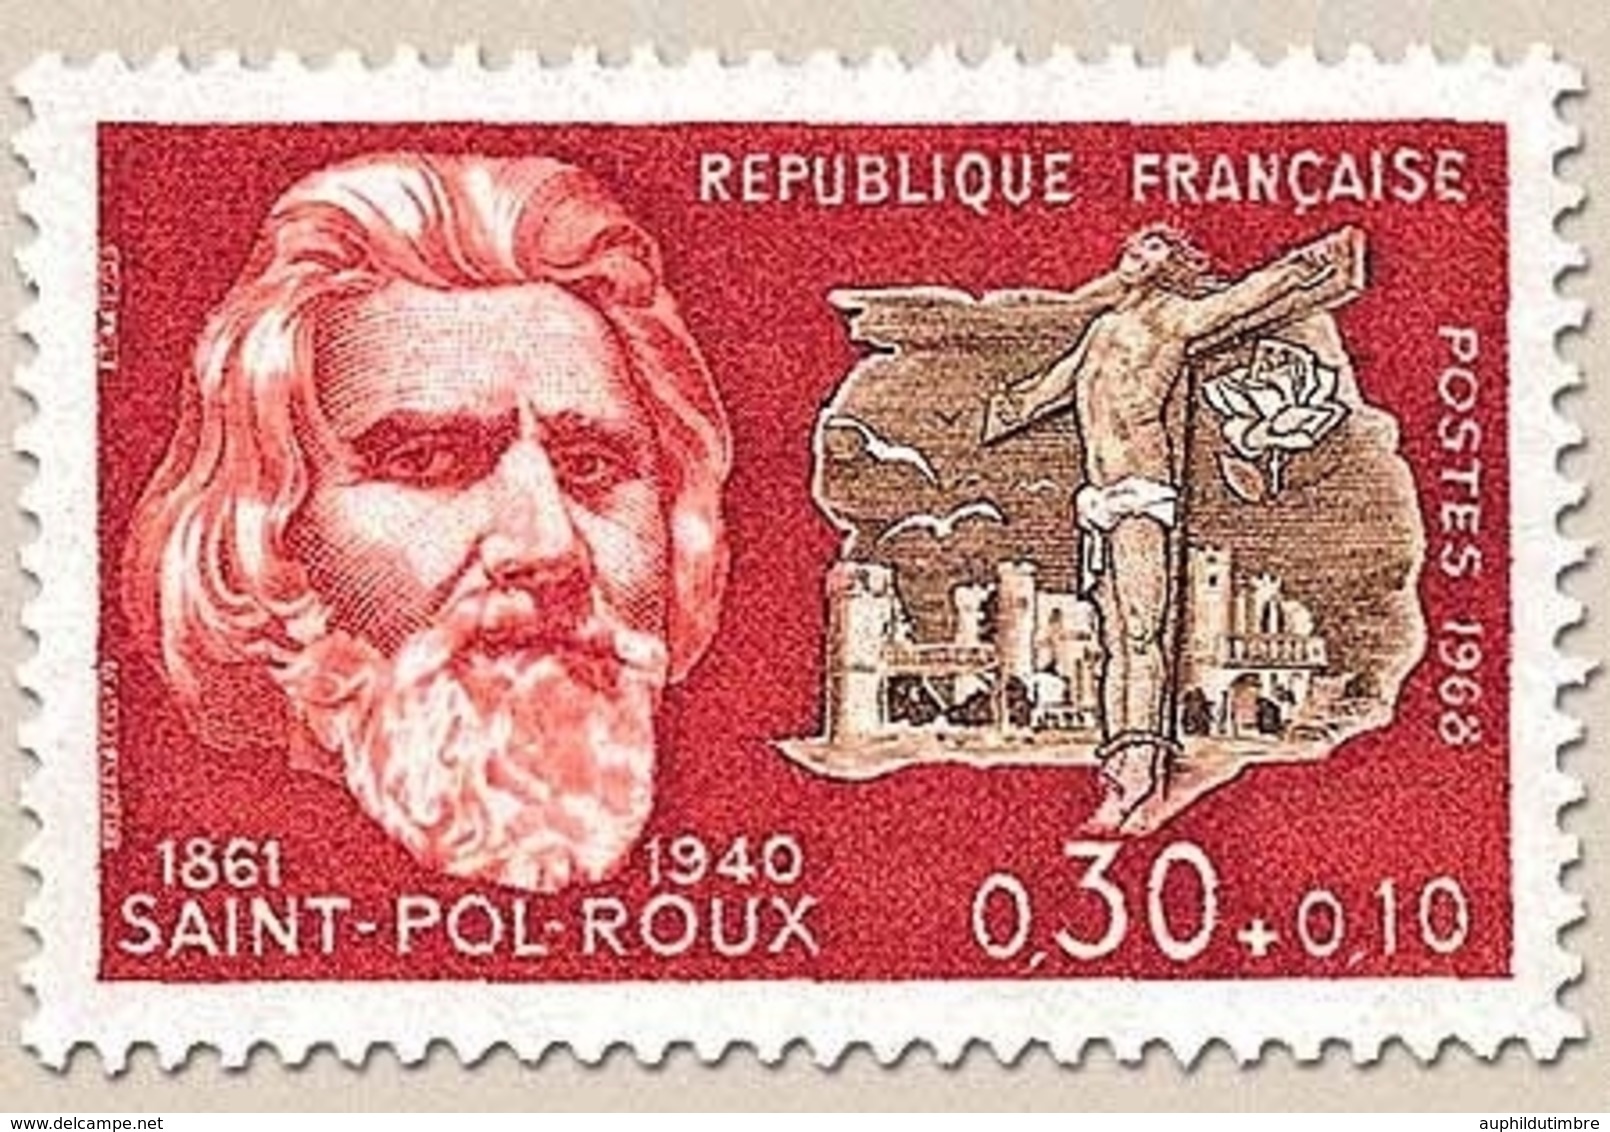 Célébrités. Paul-Pierre Roux, Dit Saint-Pol-Roux, Et Golgotha 30c. + 10c. Bistre-rouge Et Sépia Y1552 - Neufs